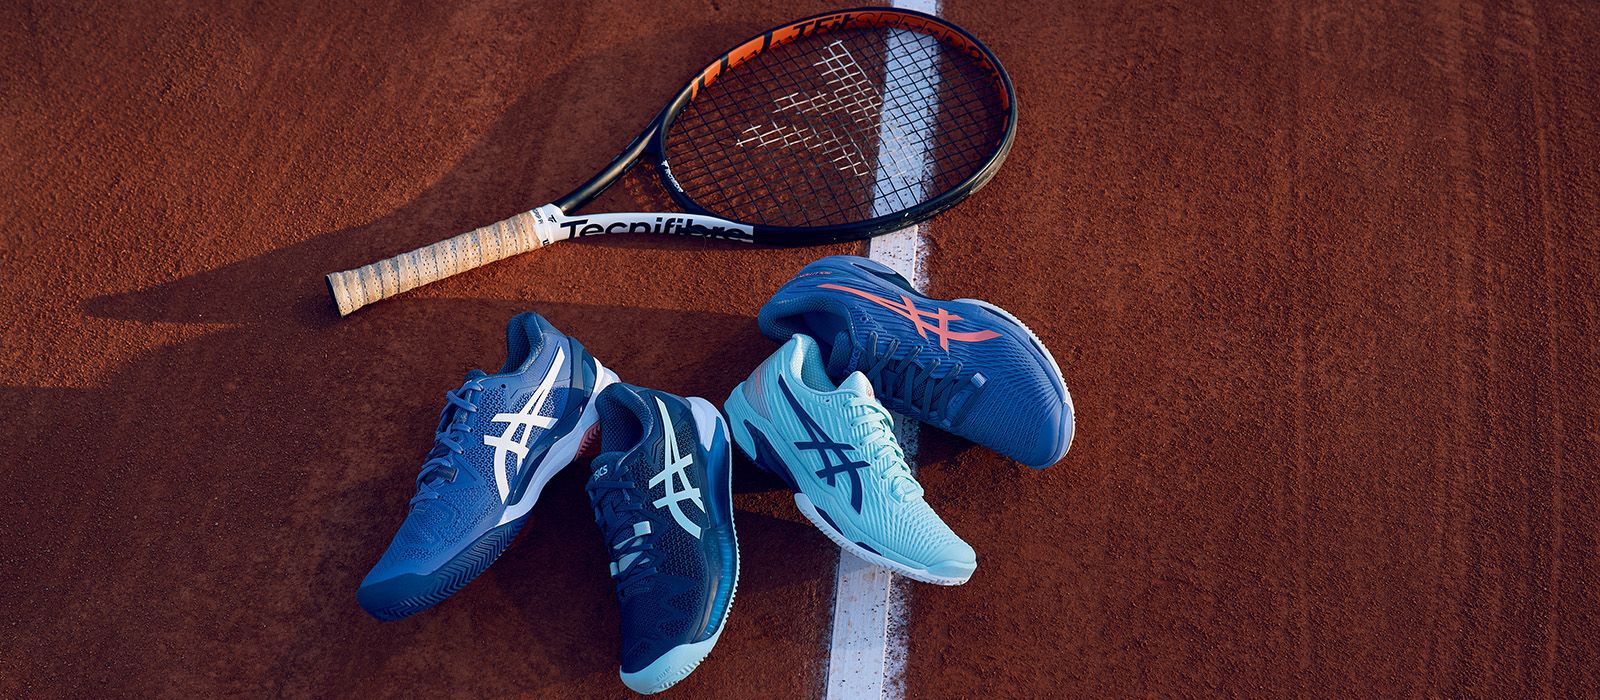 Choisir les chaussures de tennis idéales faites pour vous